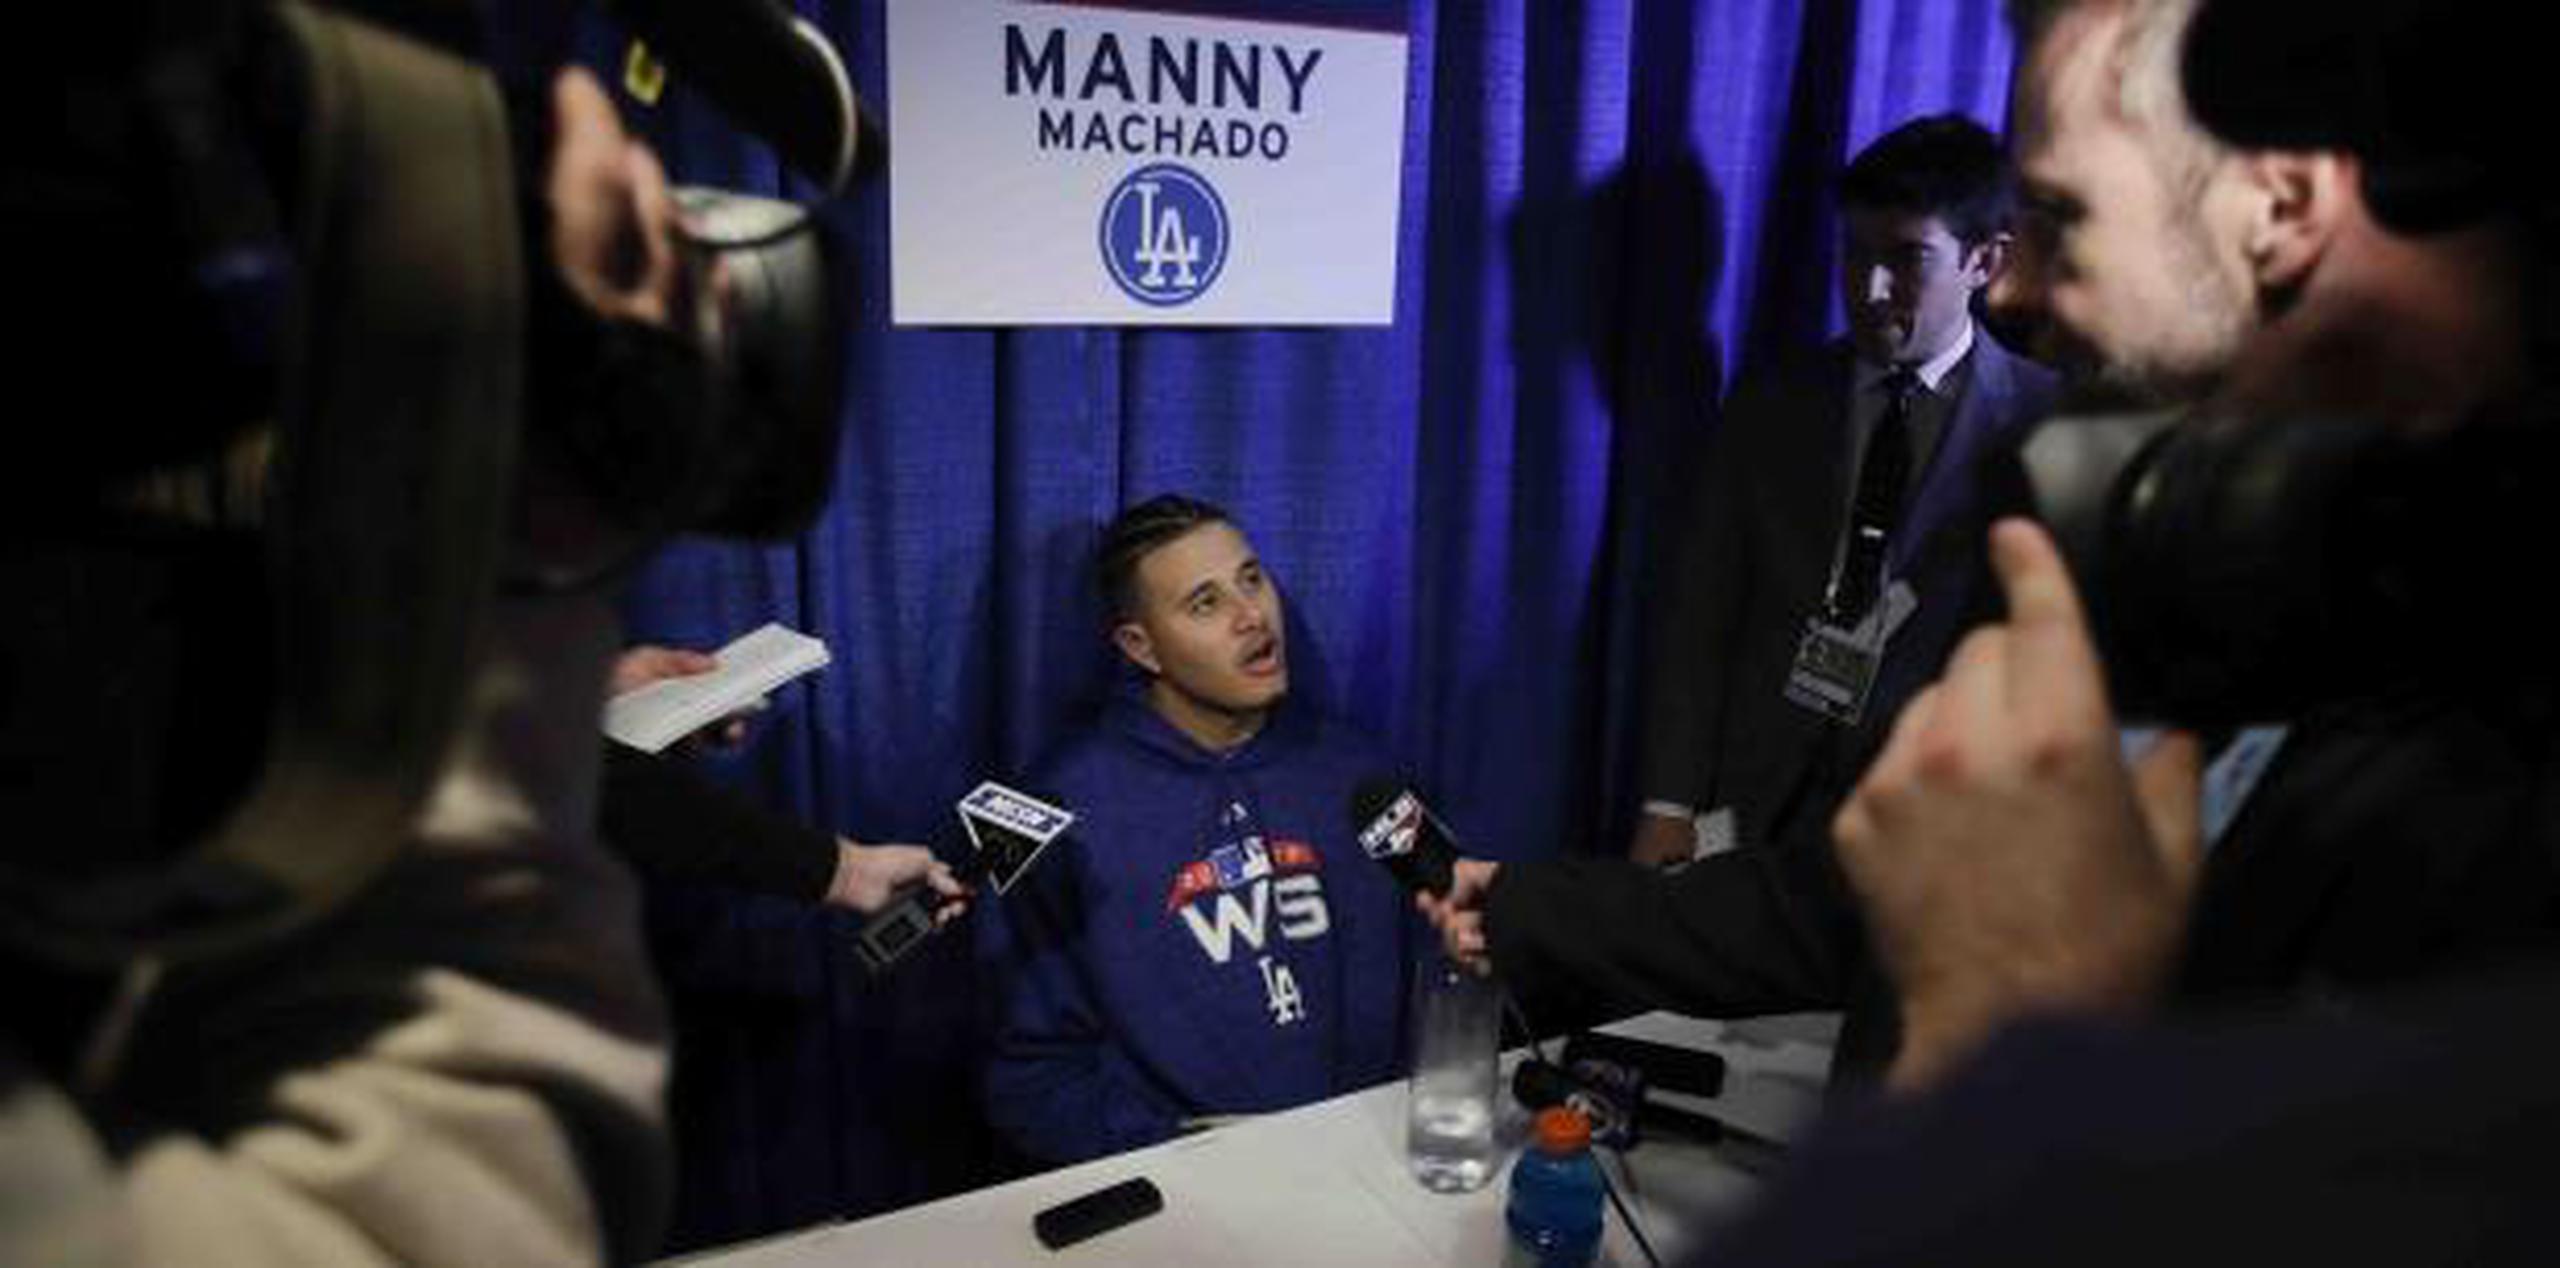 El dominicano Manny Machado fue el jugador de los Dodgers más requerido por la prensa en Boston antes del inicio de la Serie Mundial. (AP / Charles Krupa)